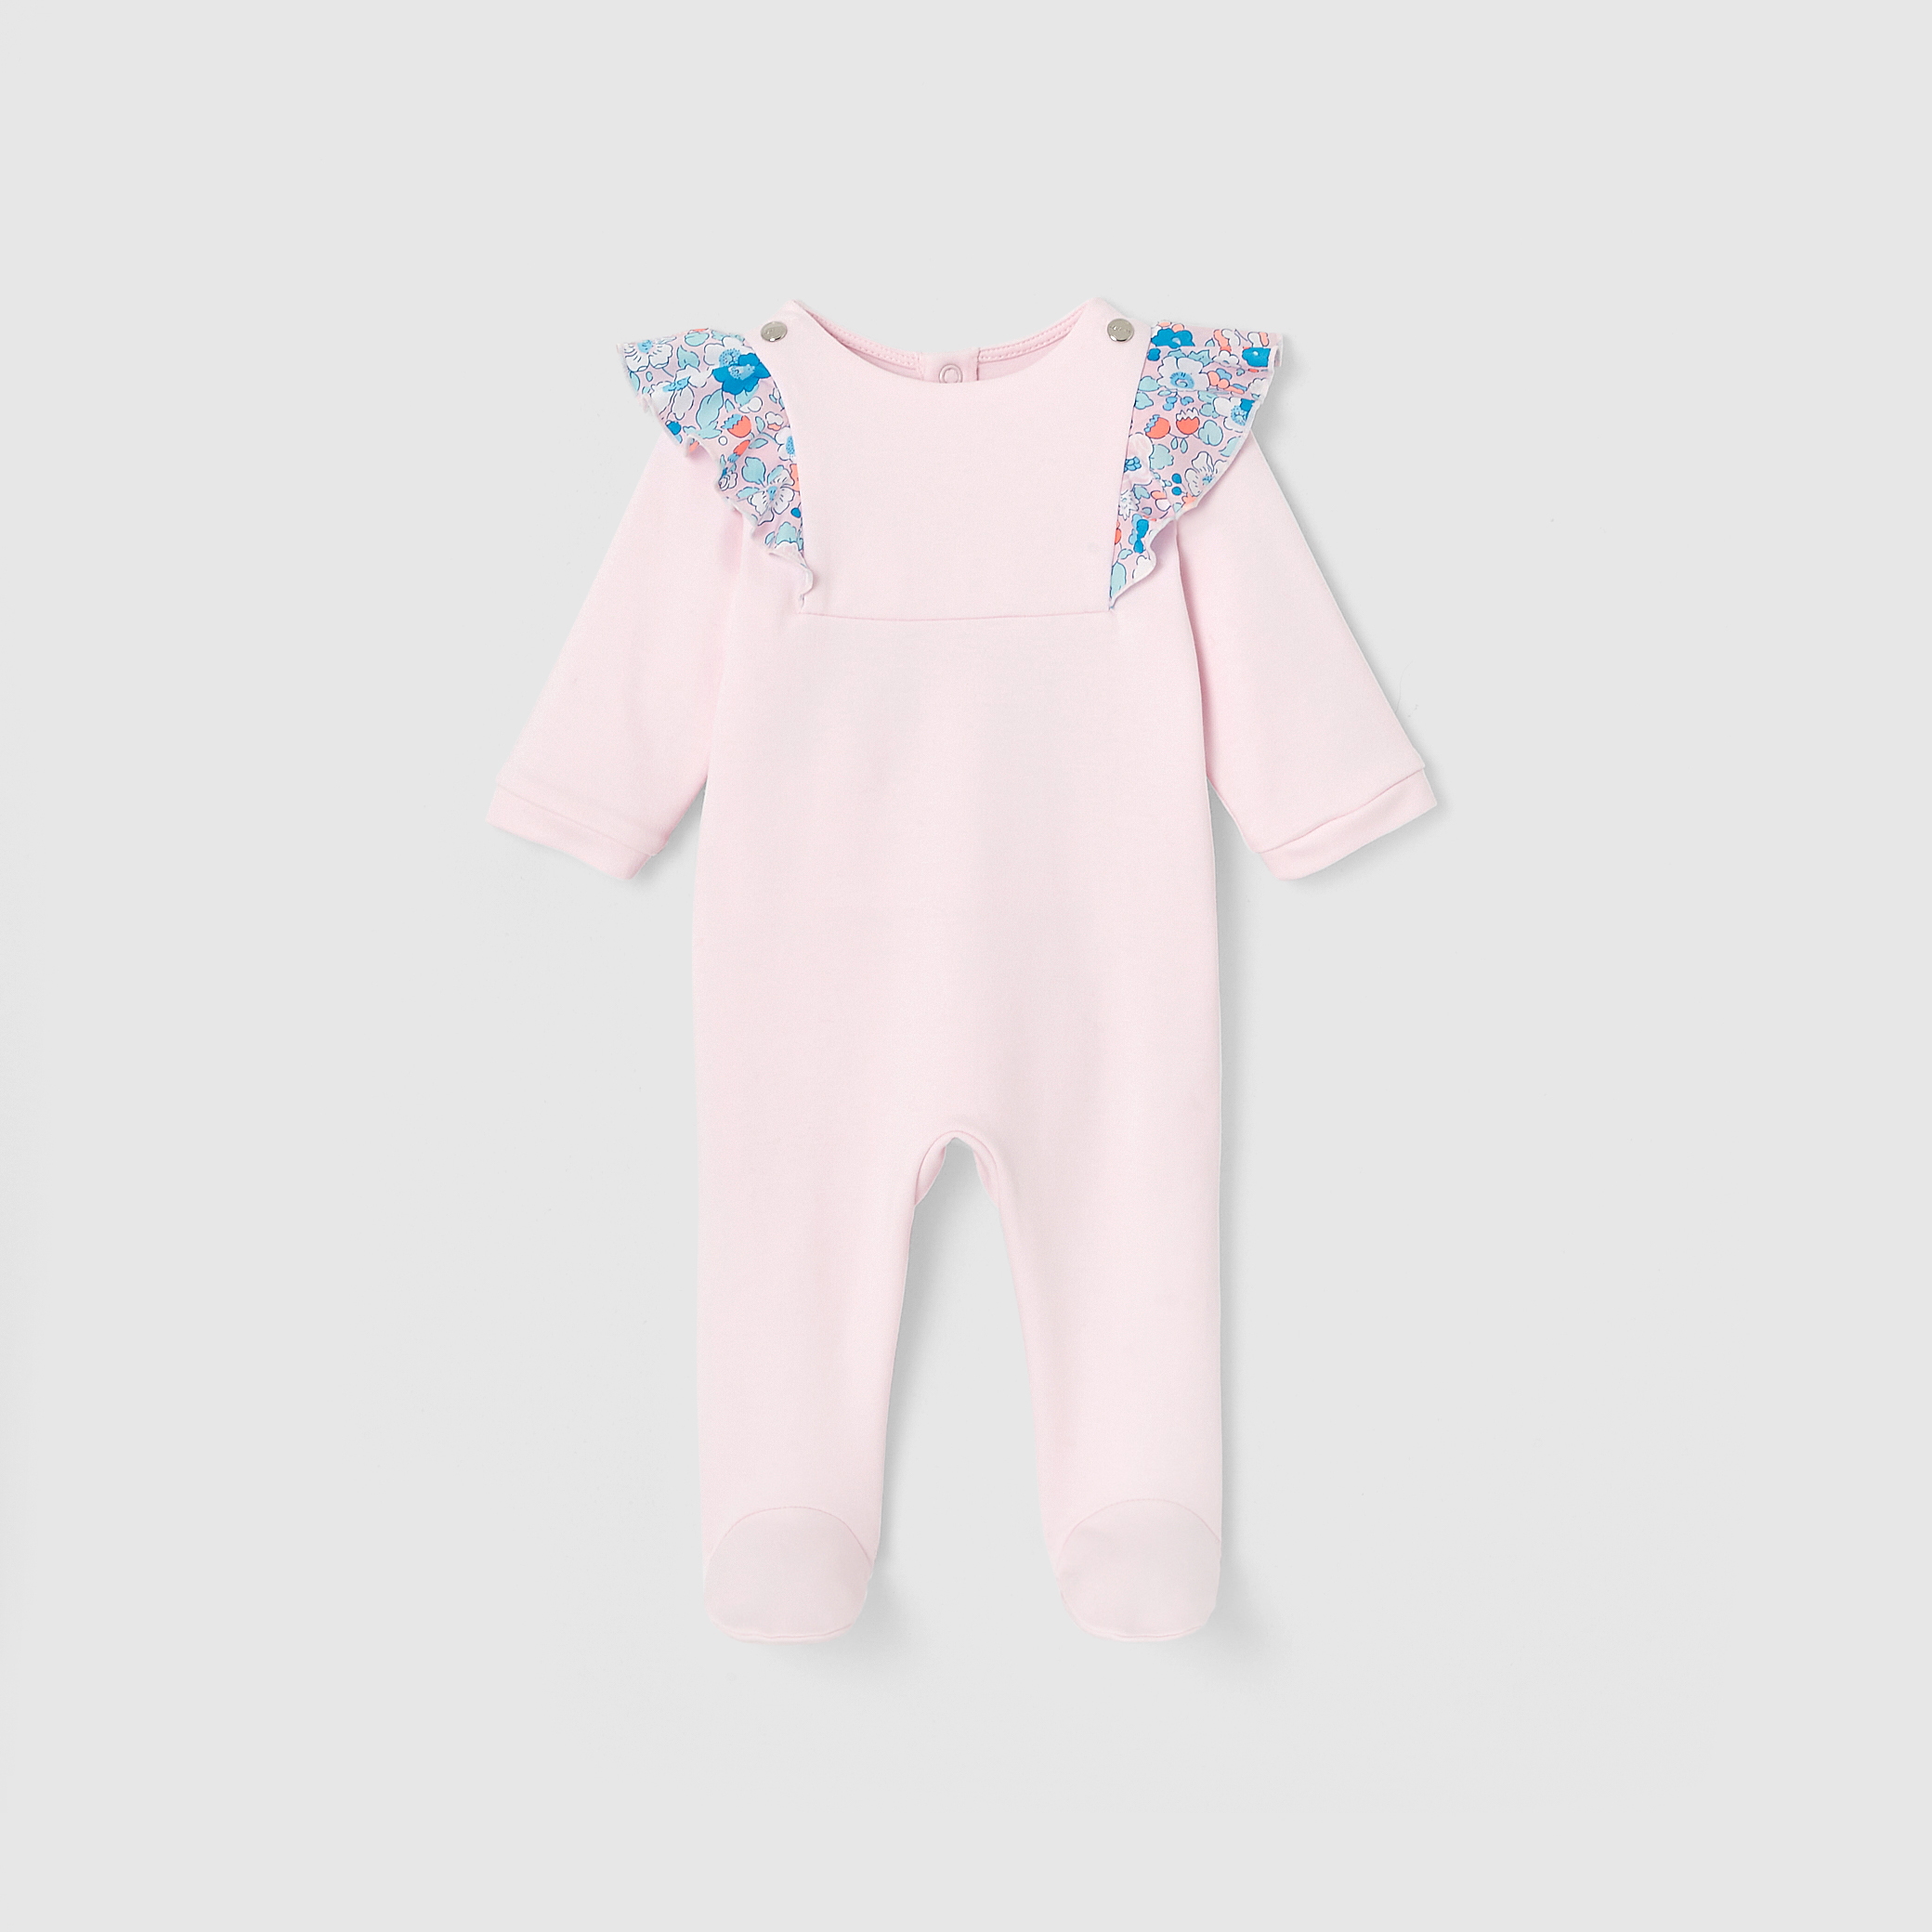 Baby girl pajamas with interlock knit